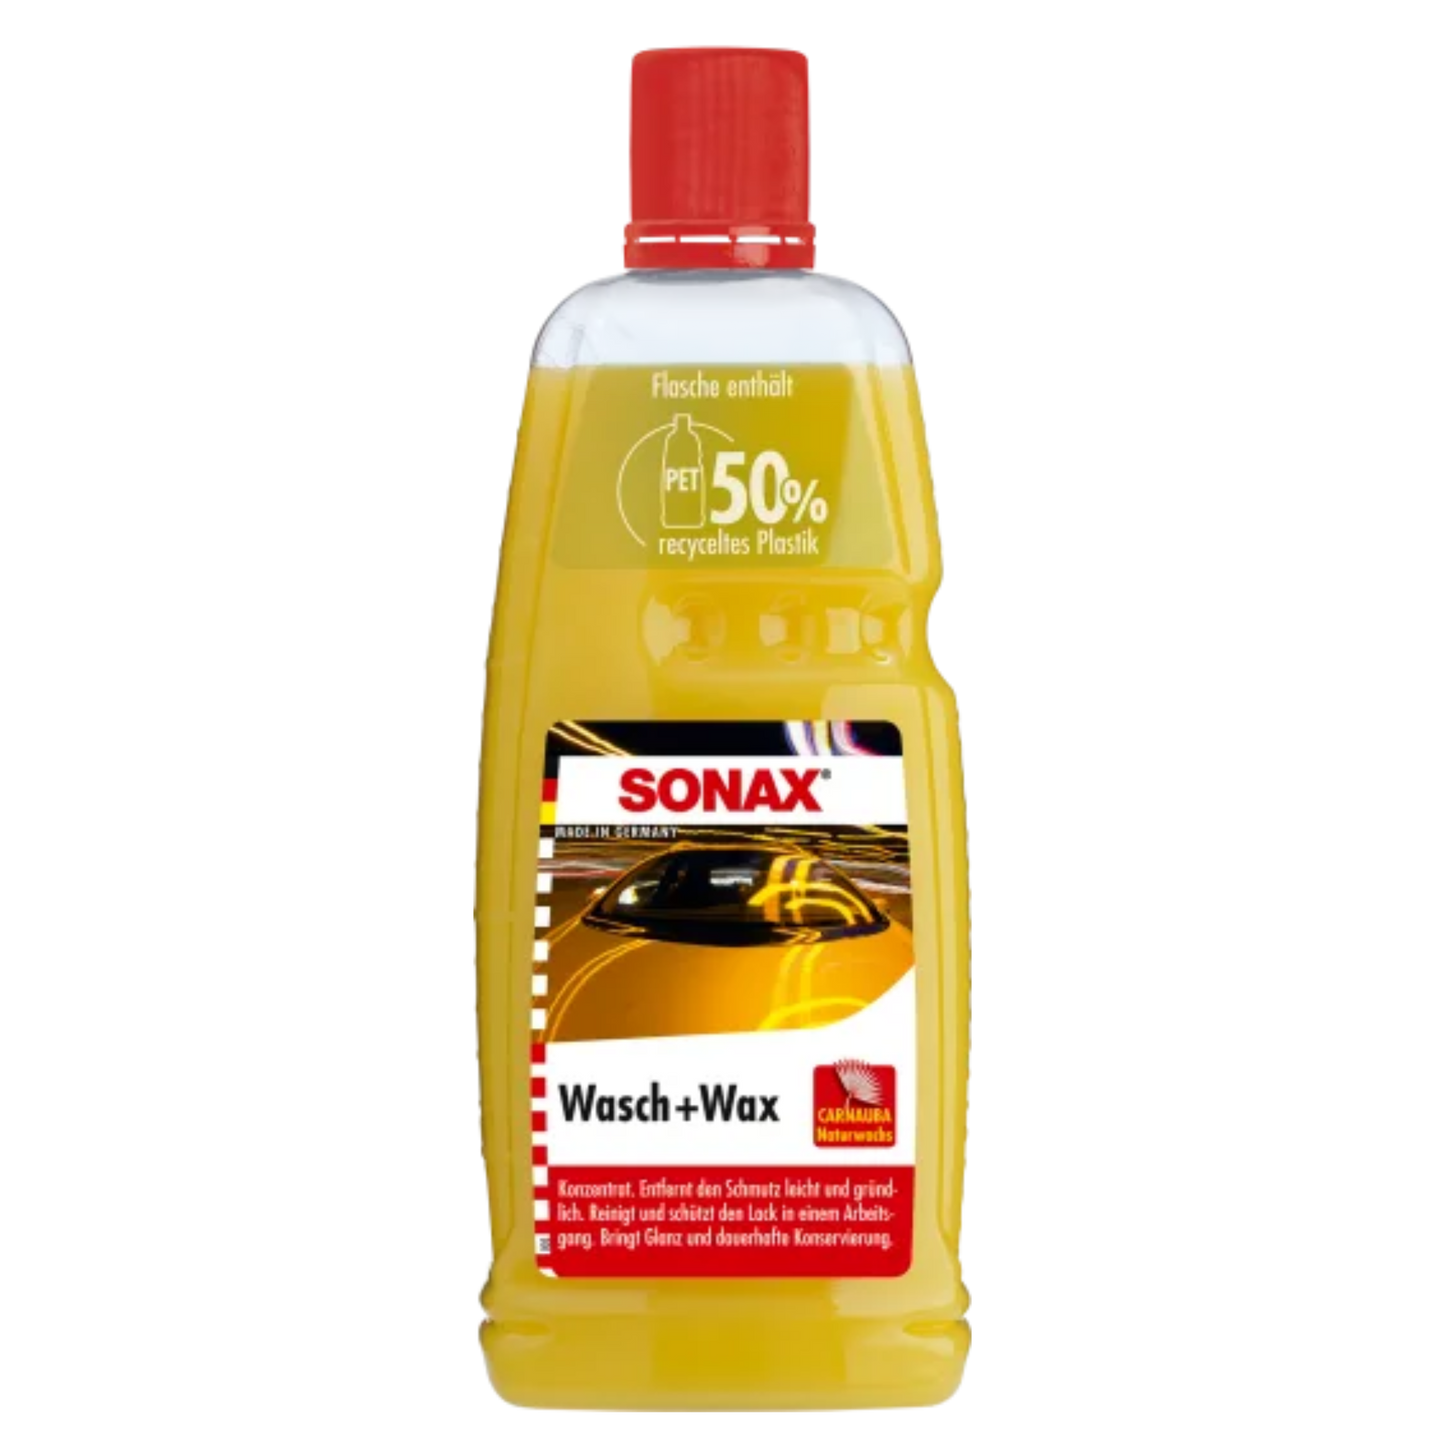 SONAX Wash + Wax